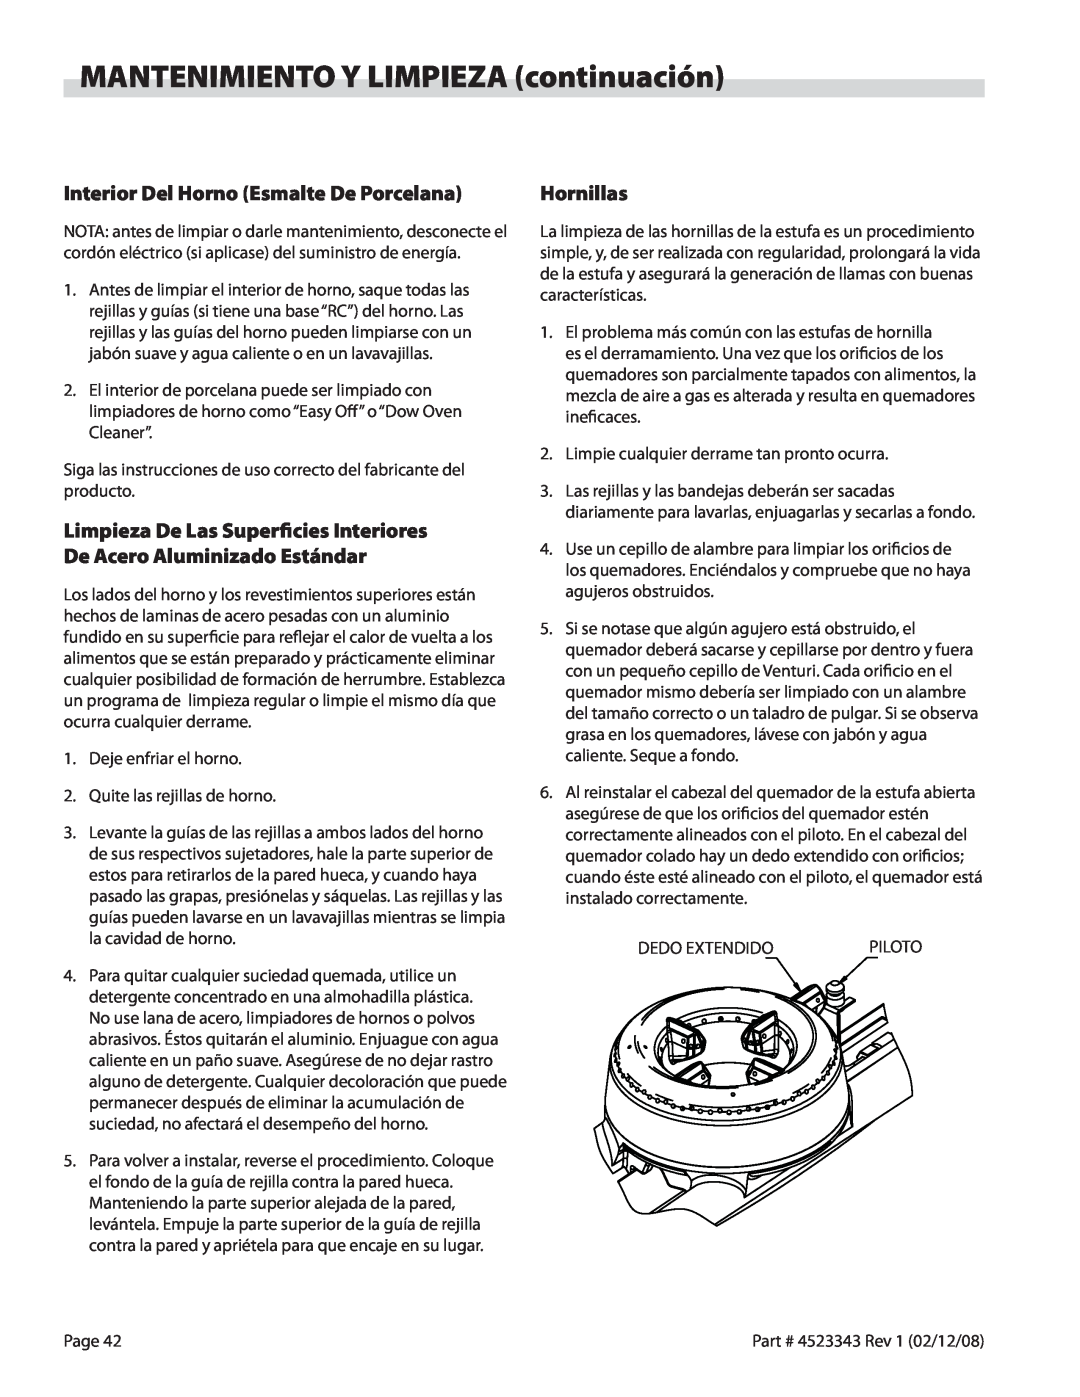 Sunfire X Series operation manual MANTENIMIENTO Y LIMPIEZA continuación, Interior Del Horno Esmalte De Porcelana, Hornillas 